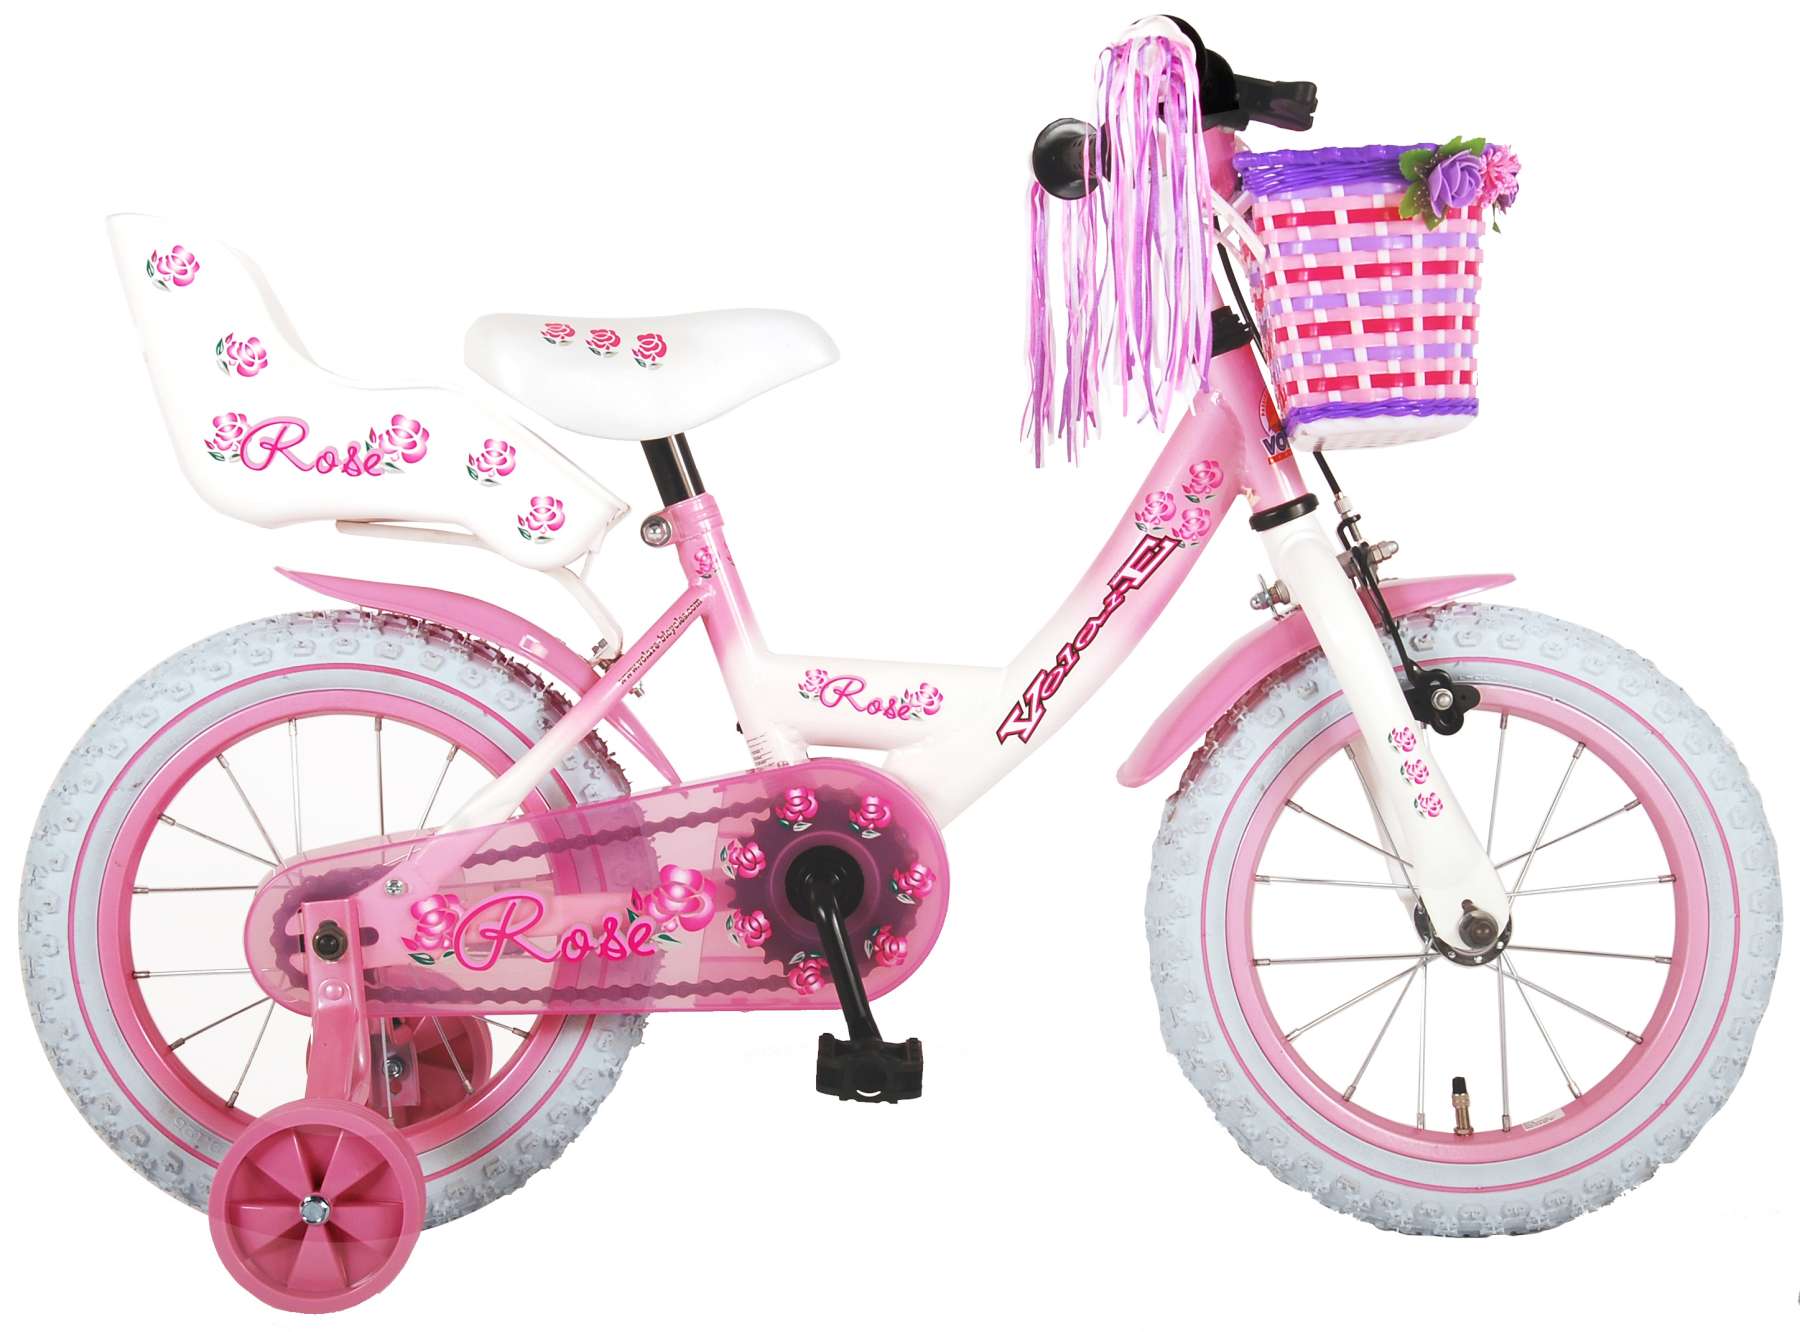 Rose børns cykel piger - tommer - lyserød hvid - 95% samlet